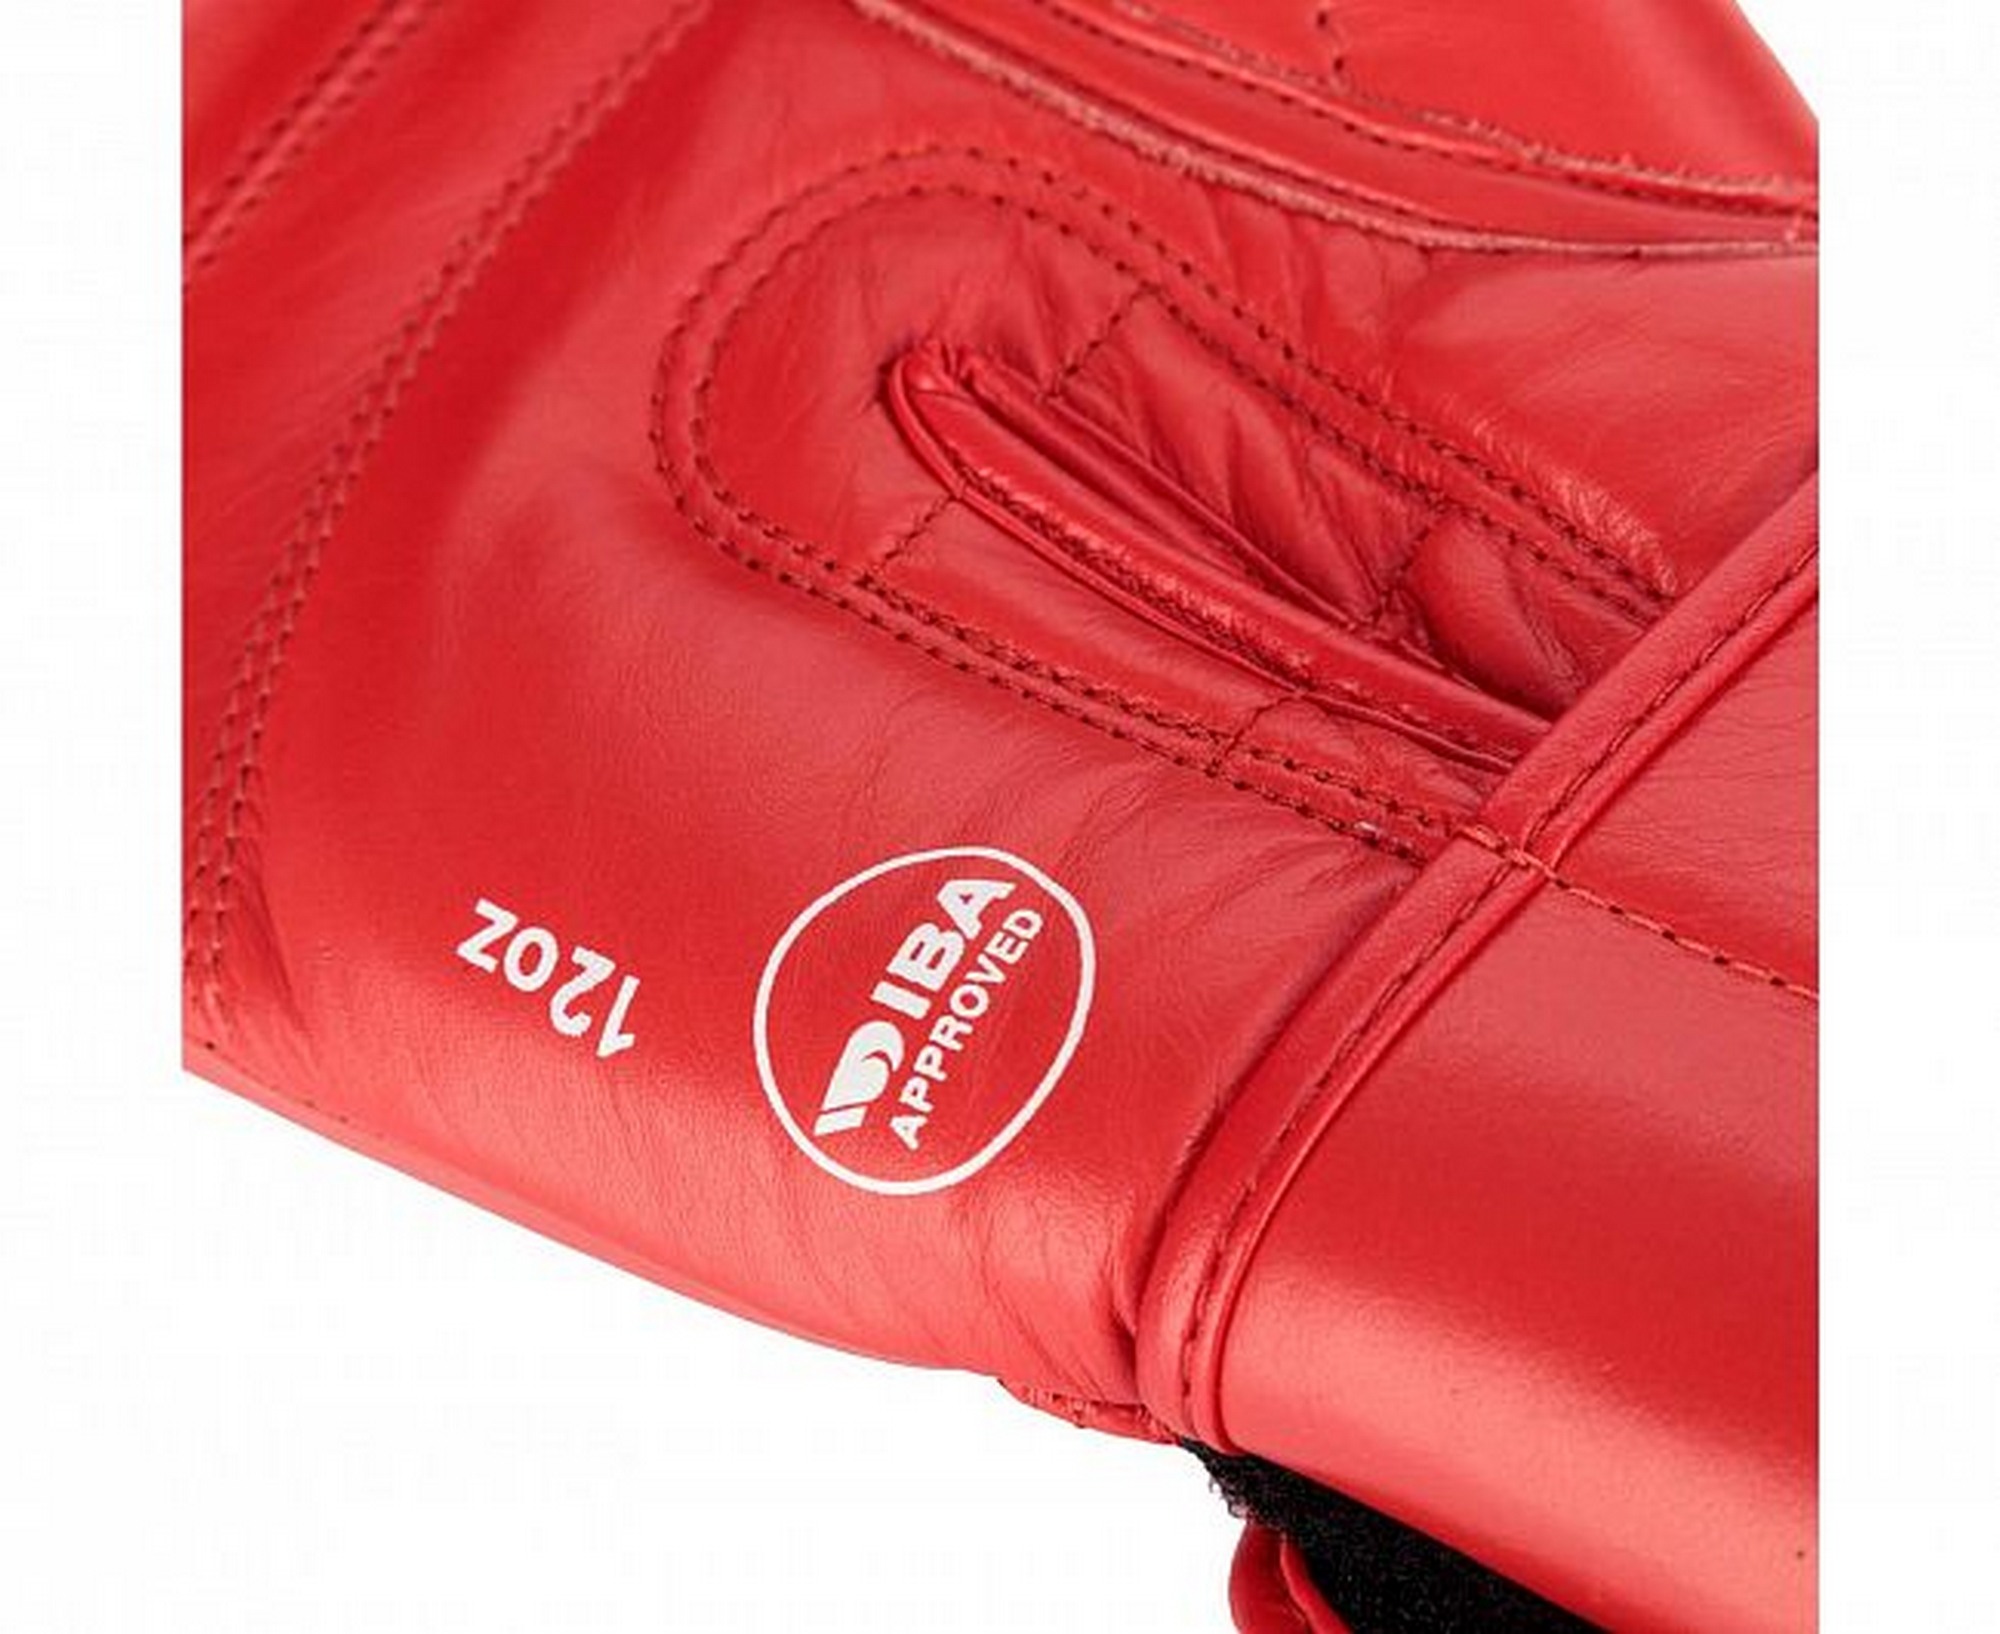 Перчатки боксерские Adidas IBA adiIBAG1 красный 2000_1634